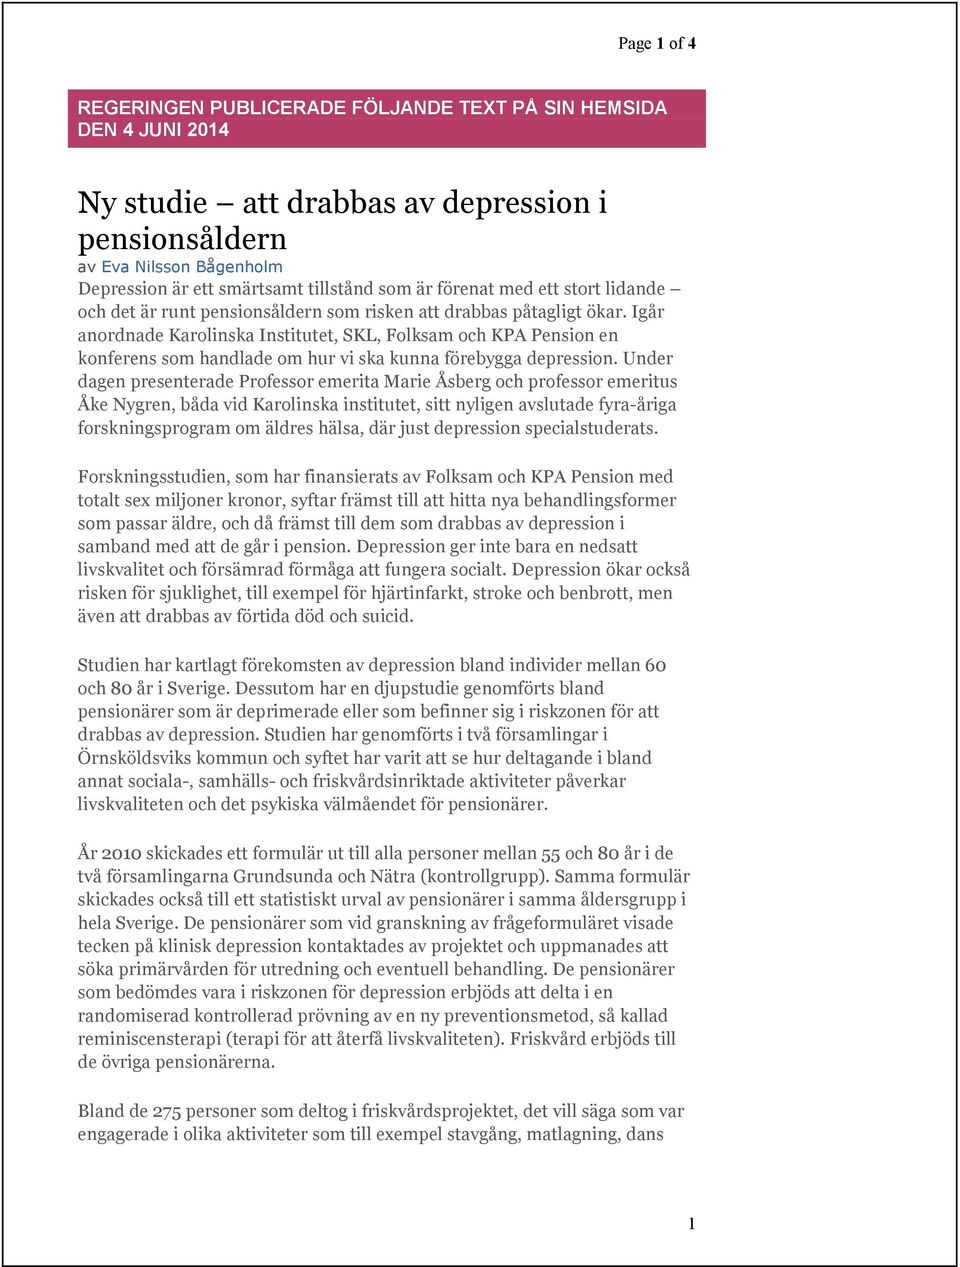 Igår anordnade Karolinska Institutet, SKL, Folksam och KPA Pension en konferens som handlade om hur vi ska kunna förebygga depression.